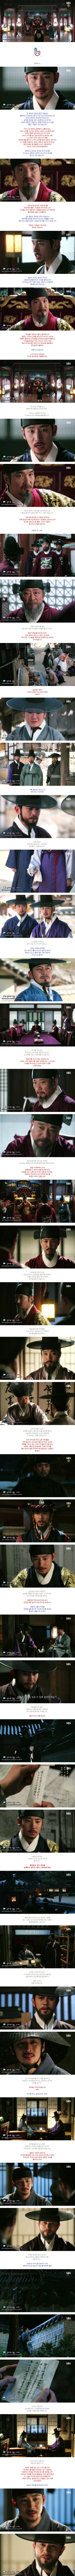 episode 18 captures for the Korean drama 'Secret Door'